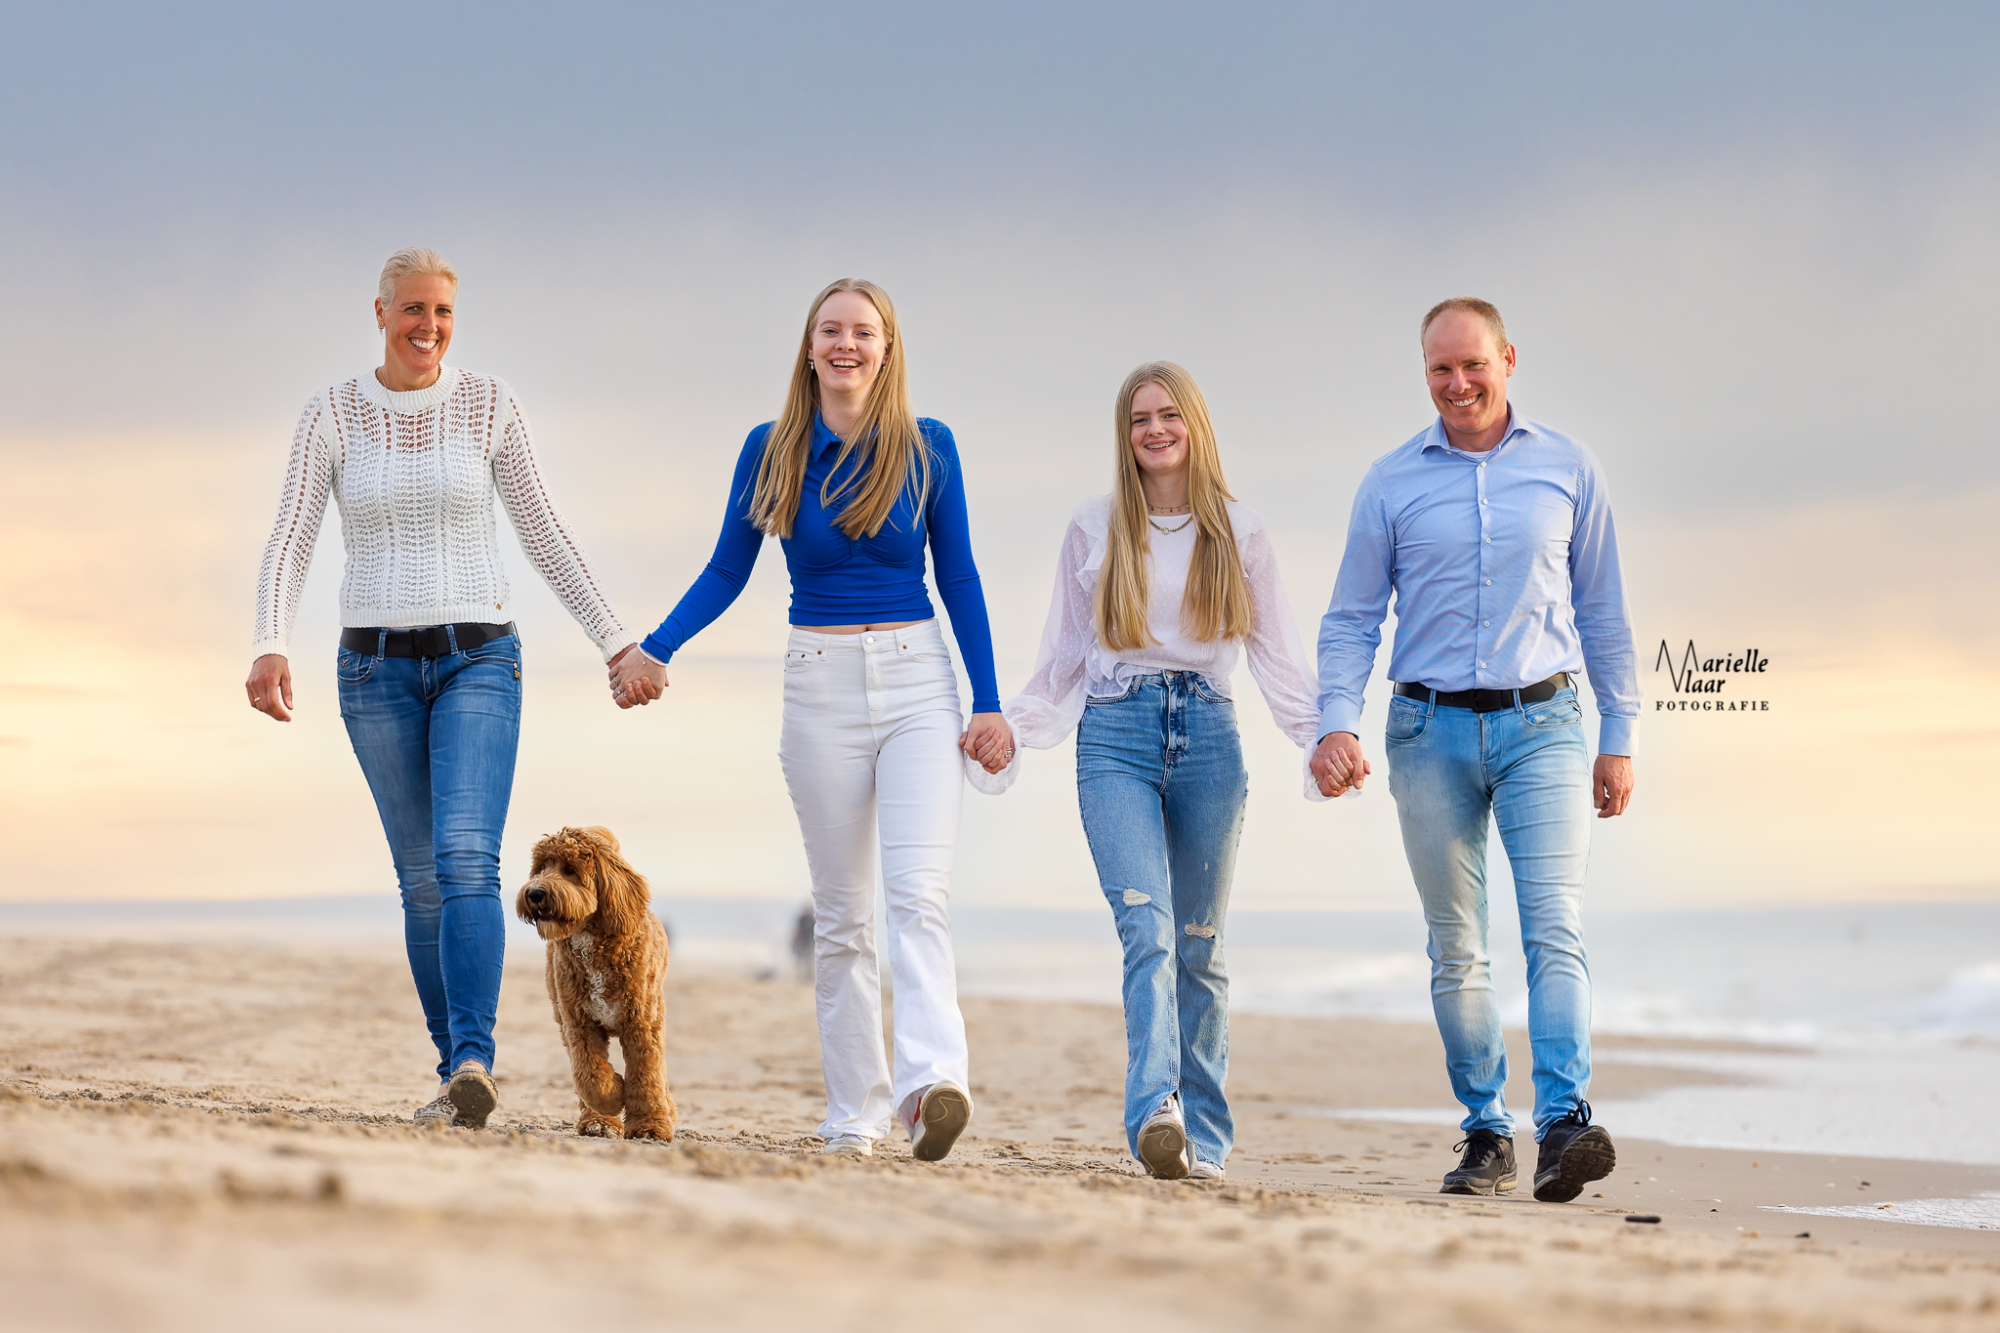 Familiefotografie op het strand, fotoshoot met hele gezin. Hondenfotograaf, gezinsfotografie, hond met kinderen op de foto